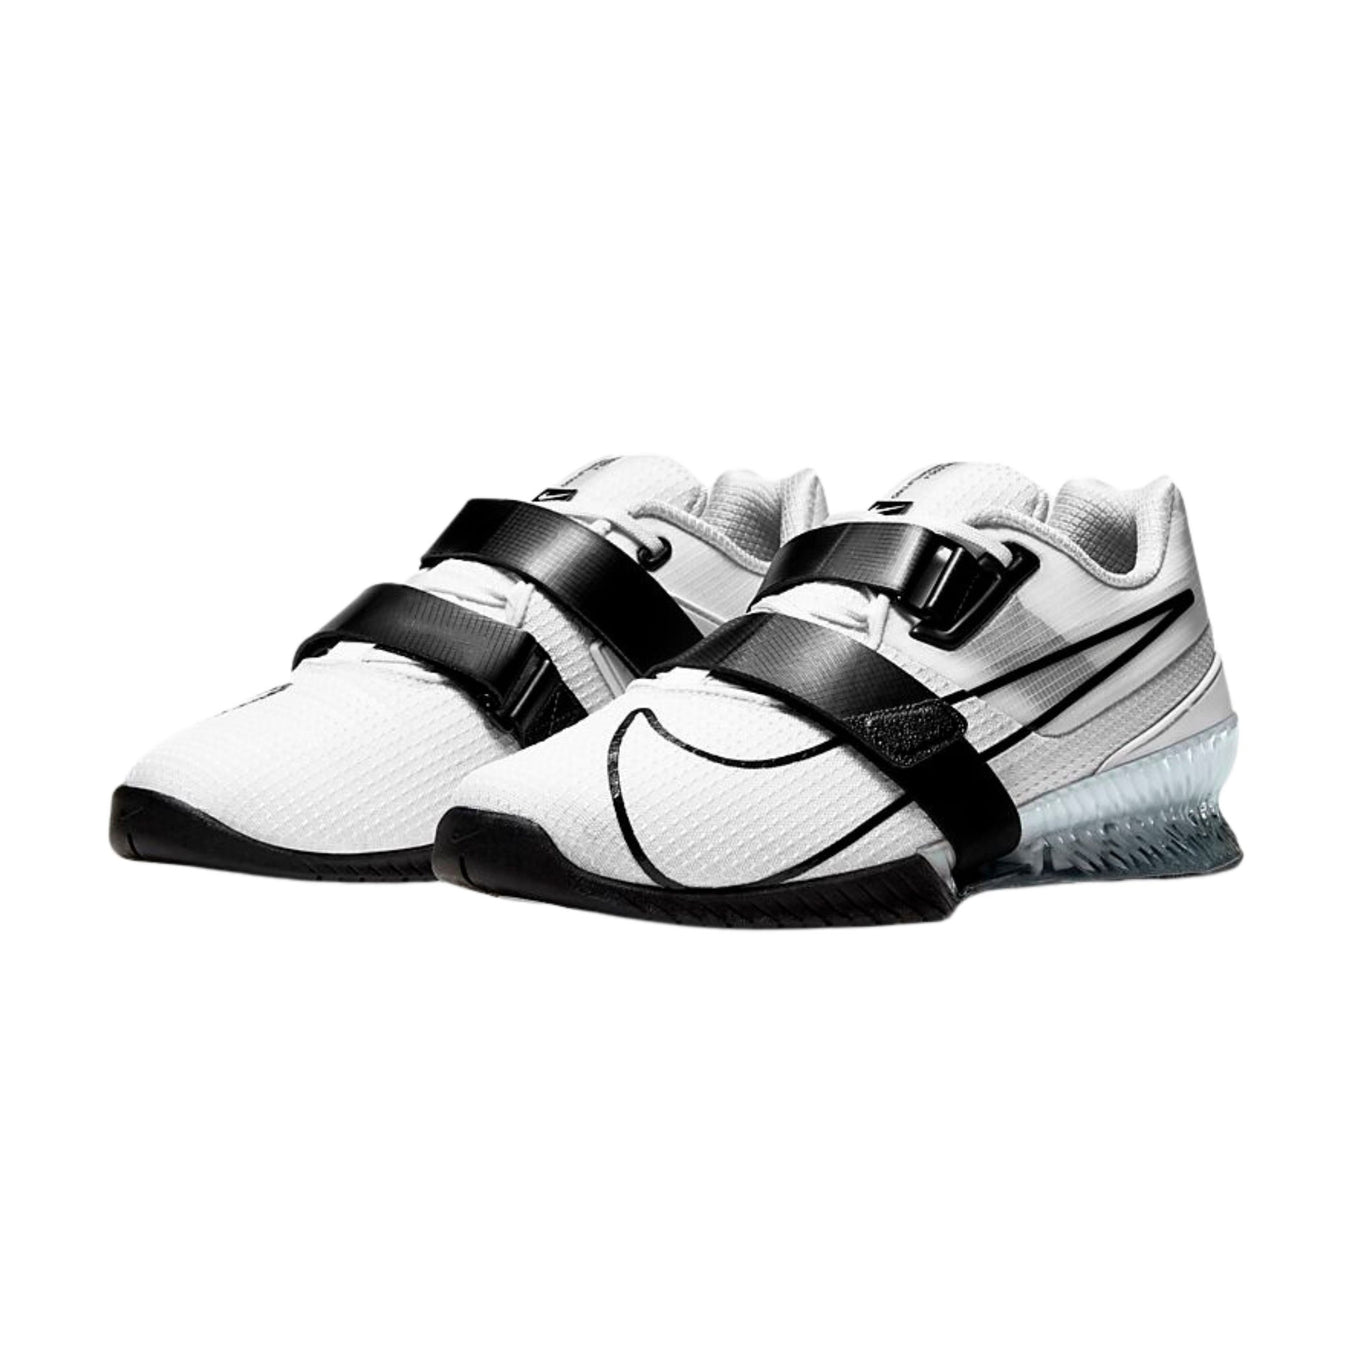 Nike Romaleos 4 White/Black